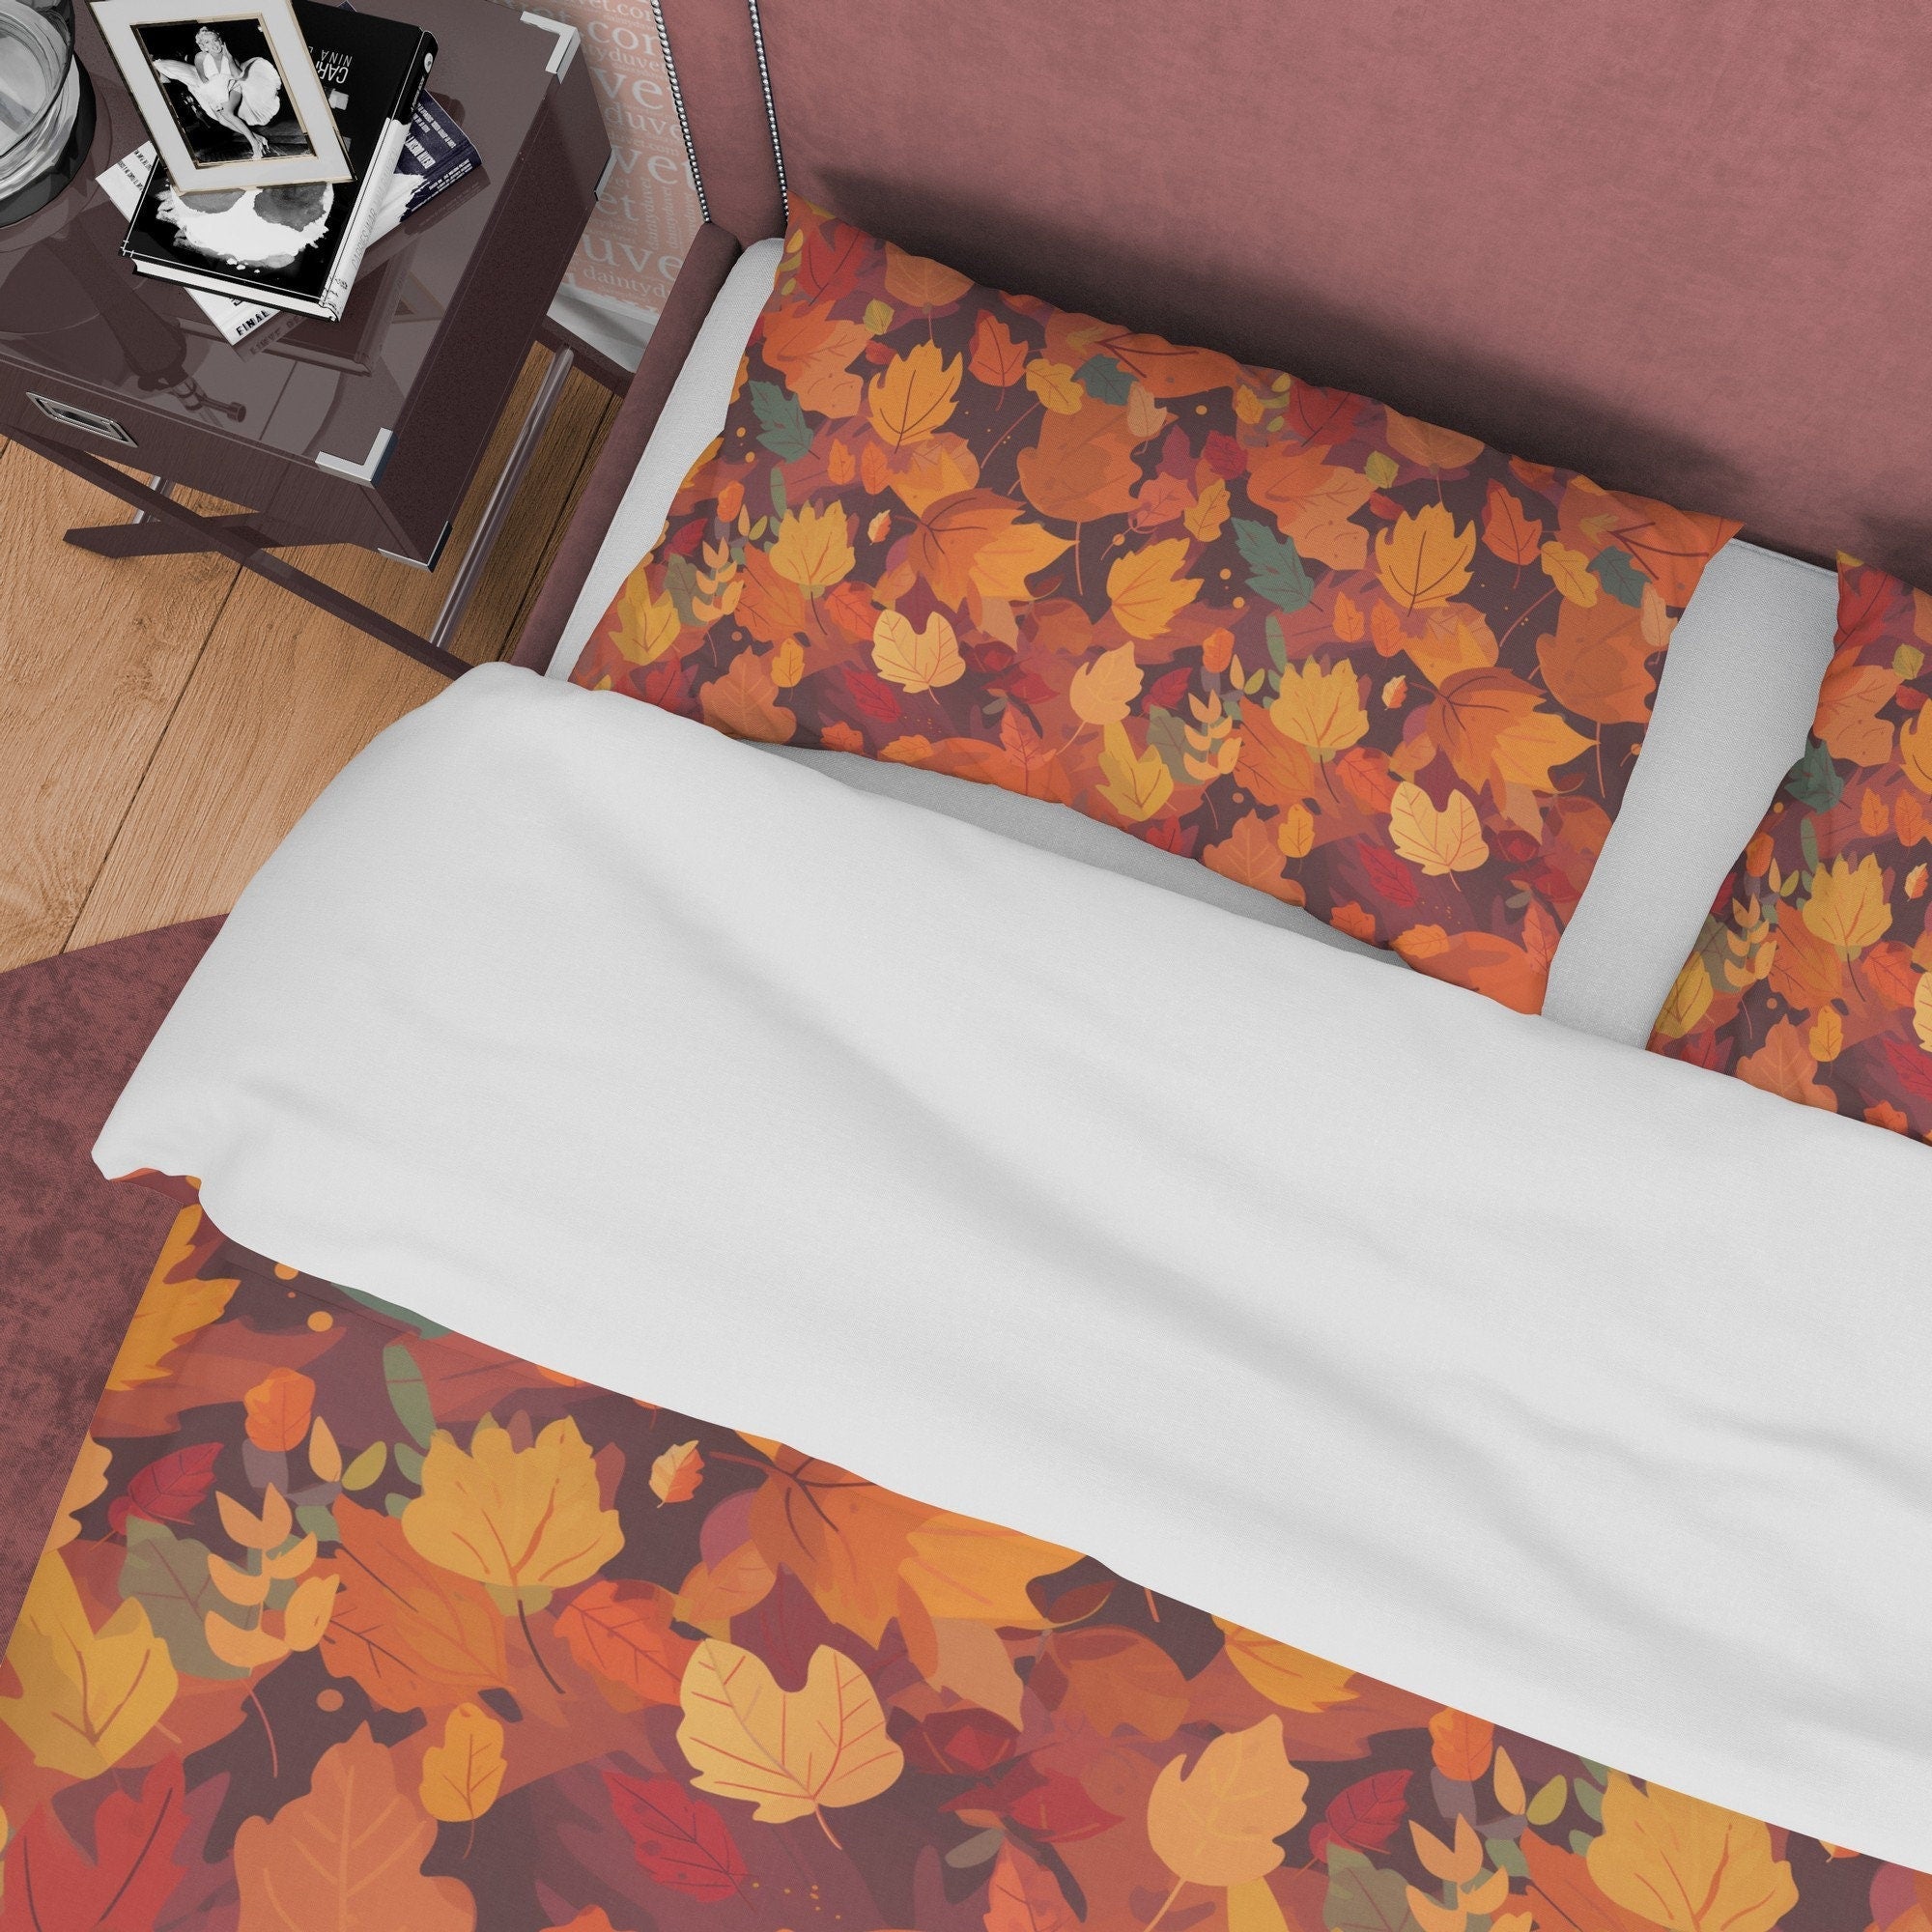 Fallen Leaves Orange Duvet Cover Autumn Bedding Set, Warm Autumn Colors Printed Quilt Cover, Foliage Bedspread